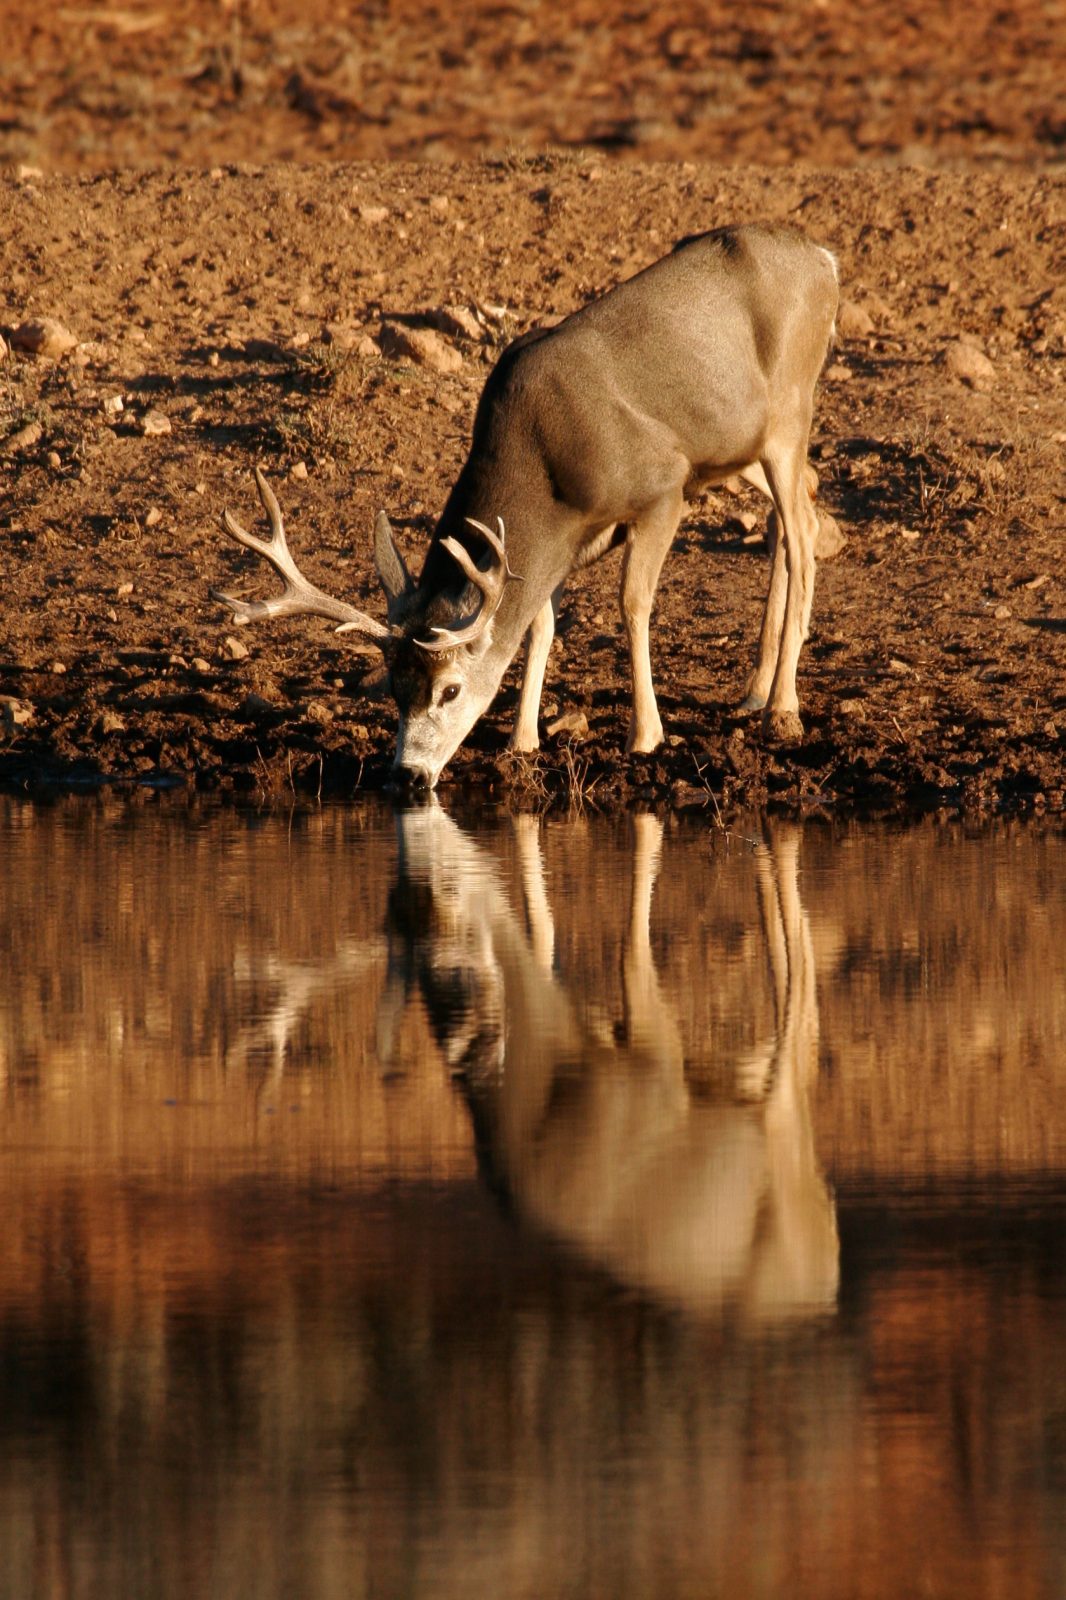 Enter the DWR Utah's Wildlife Through the Seasons Photo Contest!